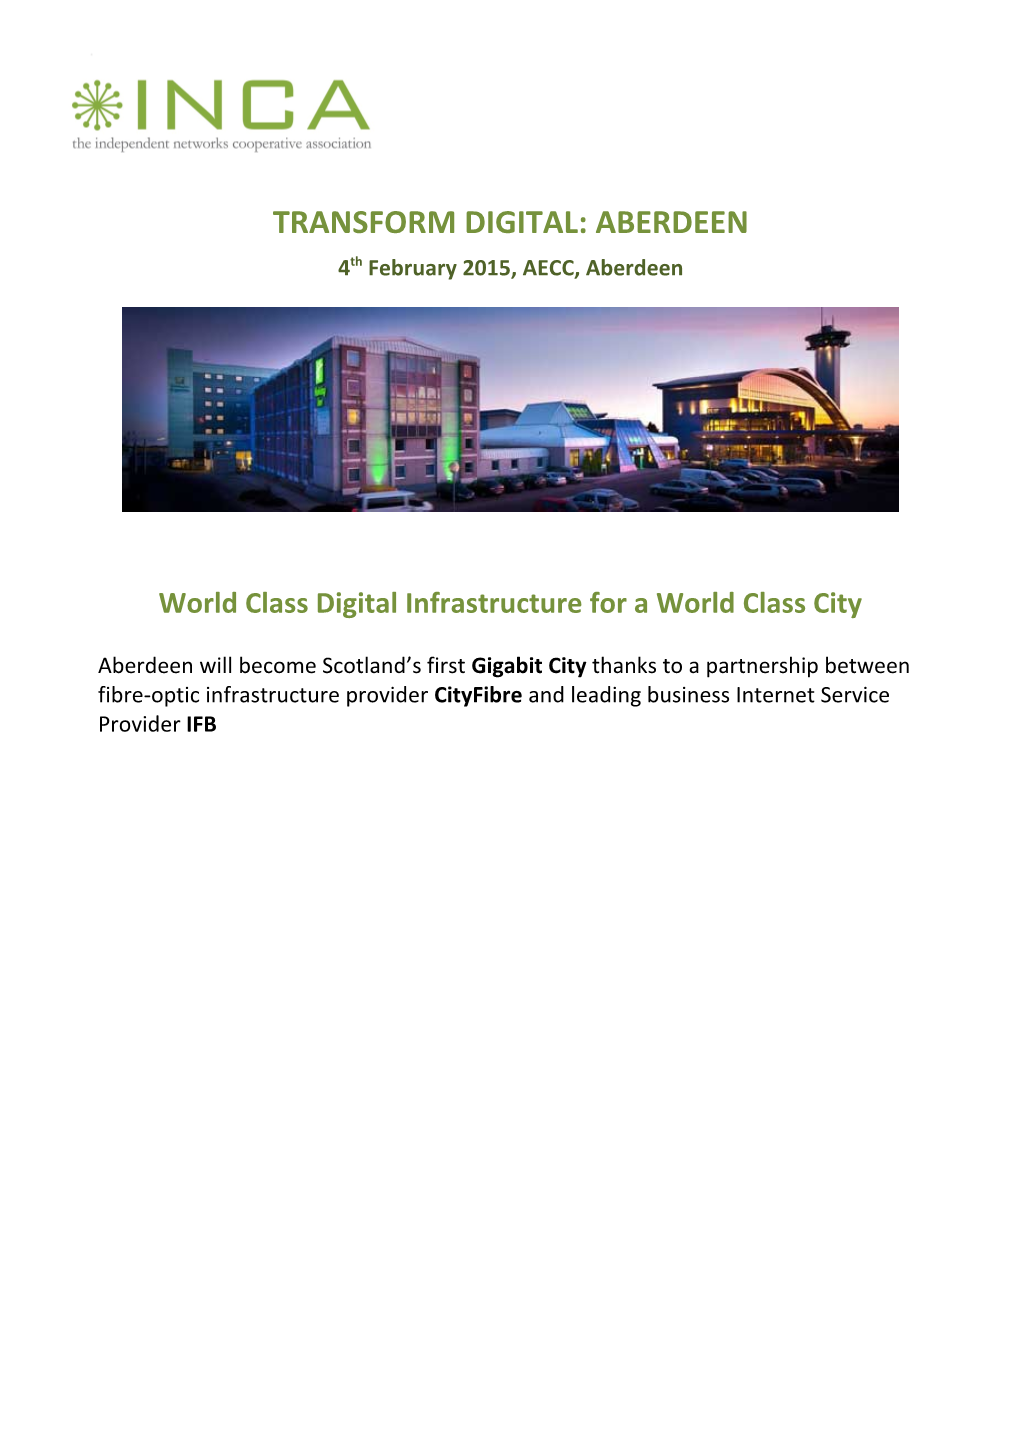 World Class Digital Infrastructure for a World Class City